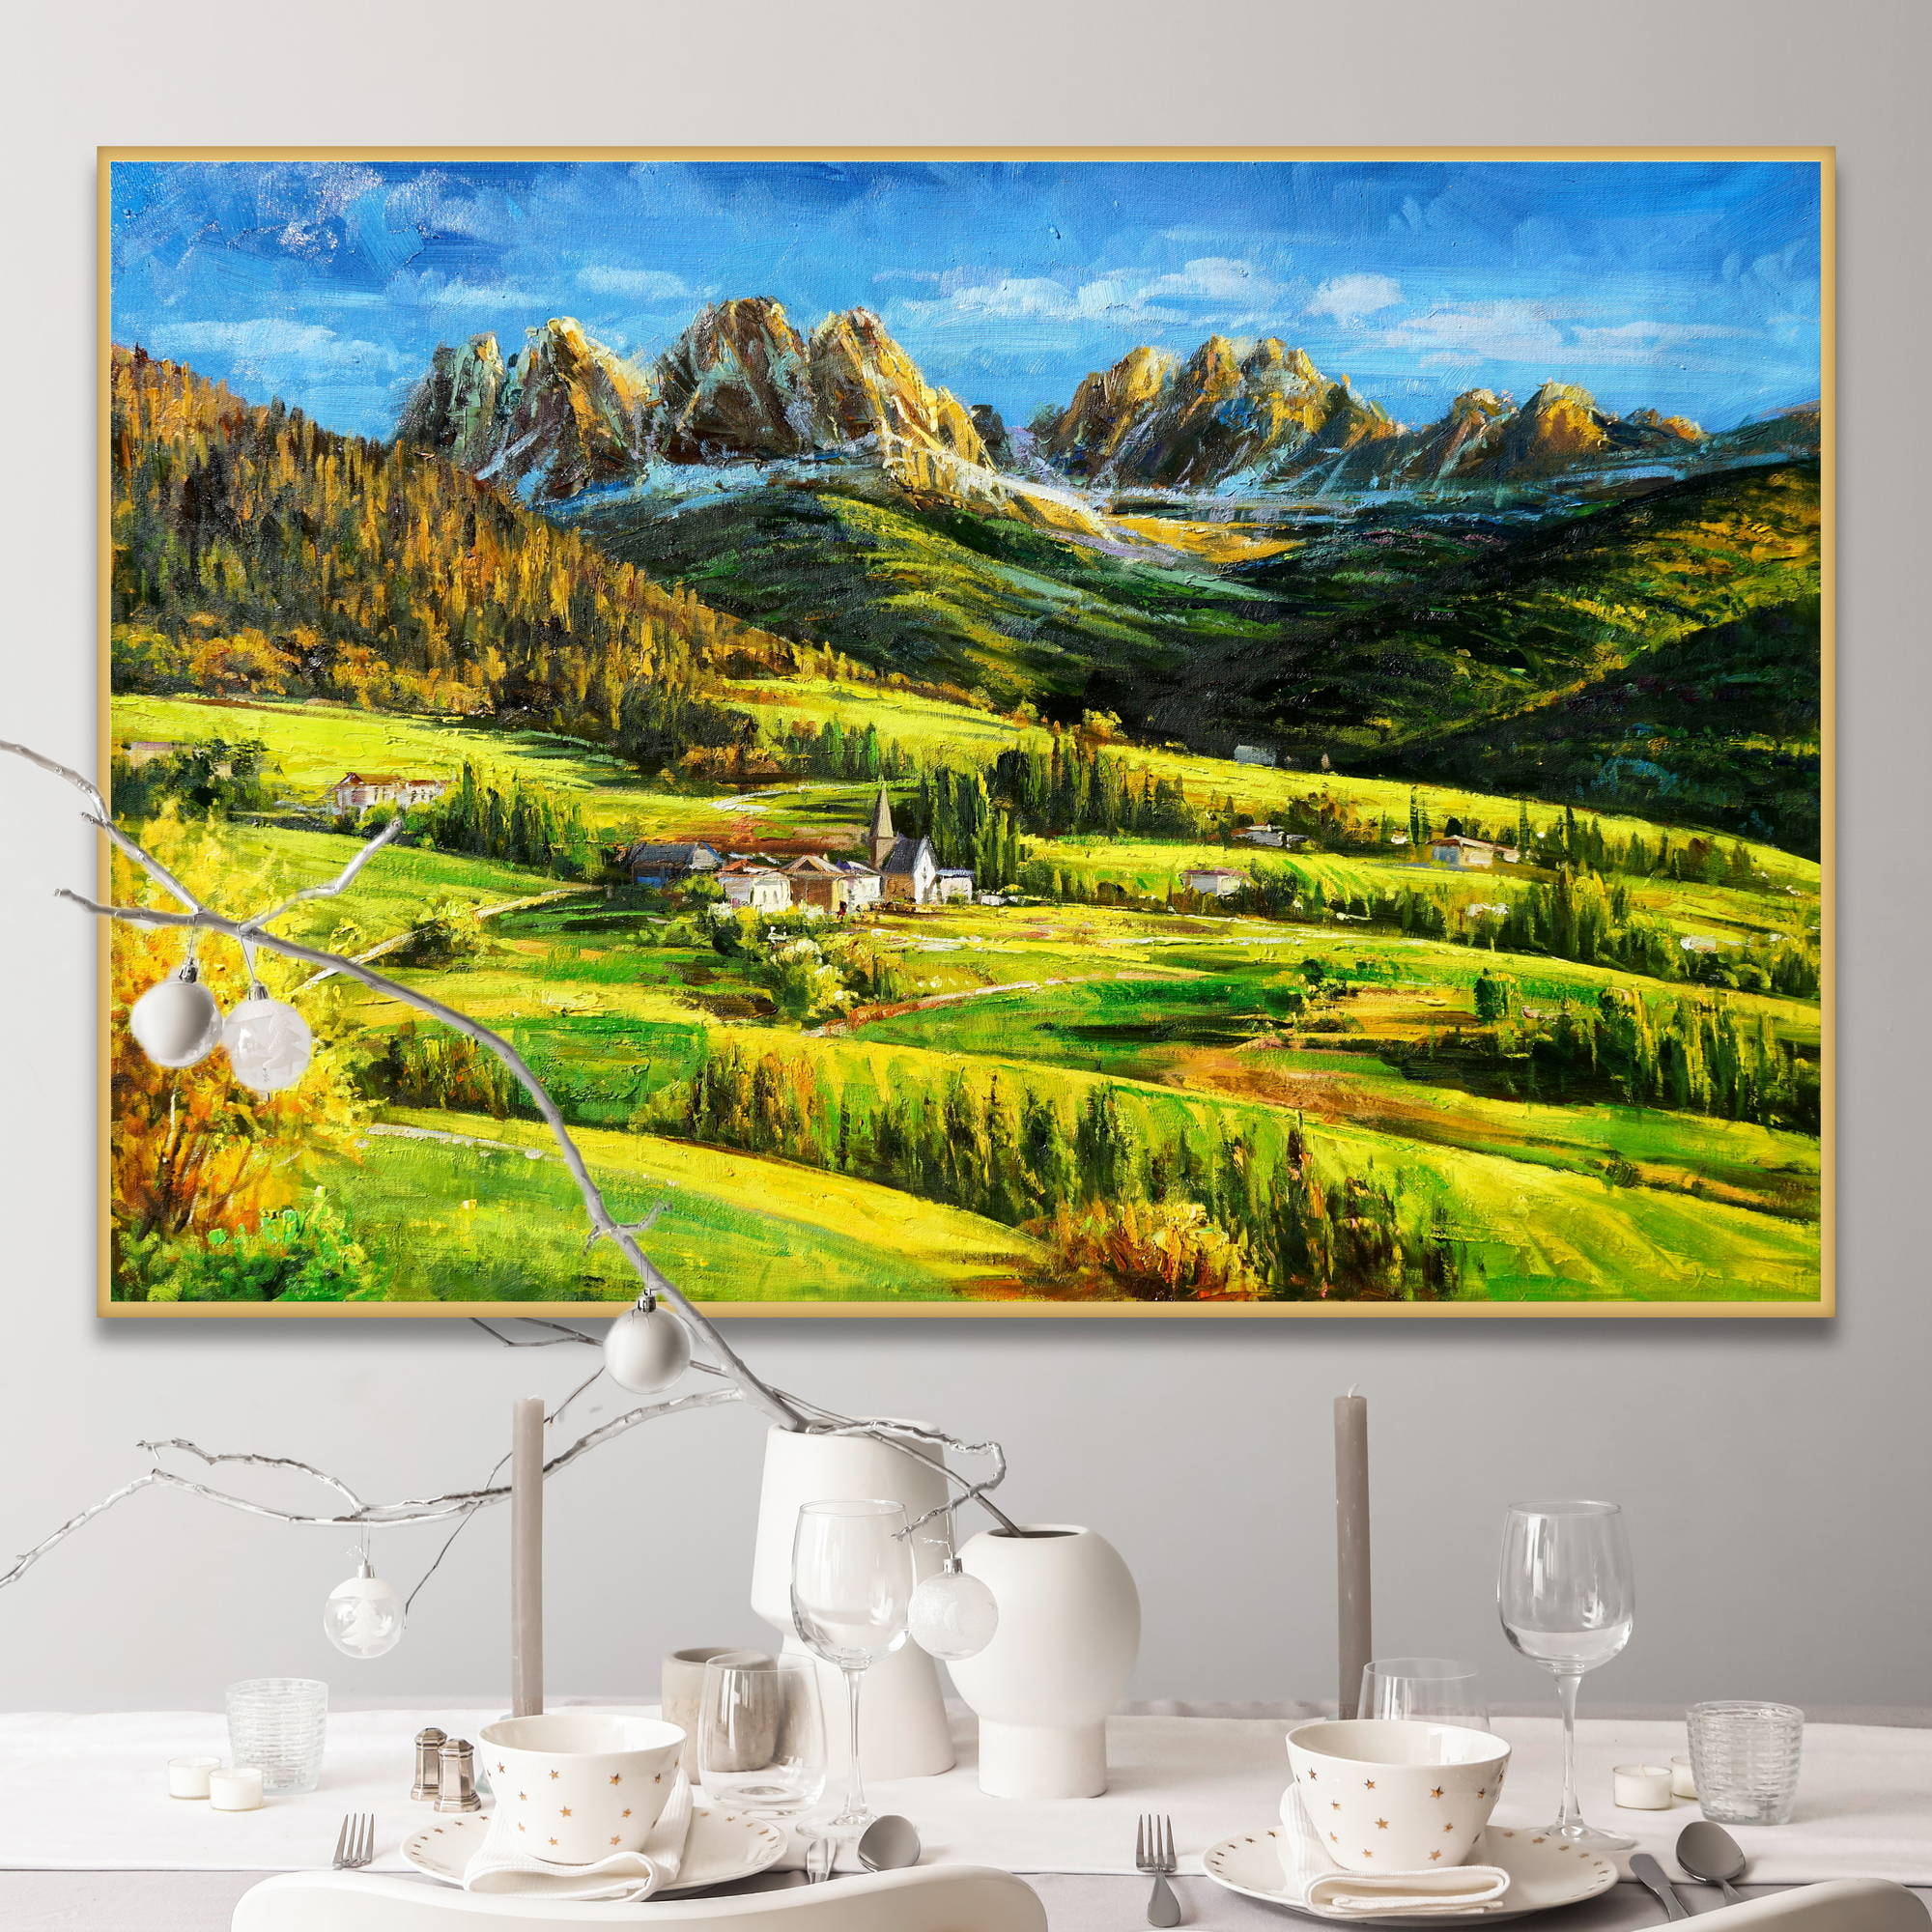 Dipinto di un paesaggio dolomitico con valli verdi e insediamenti nella luce del giorno